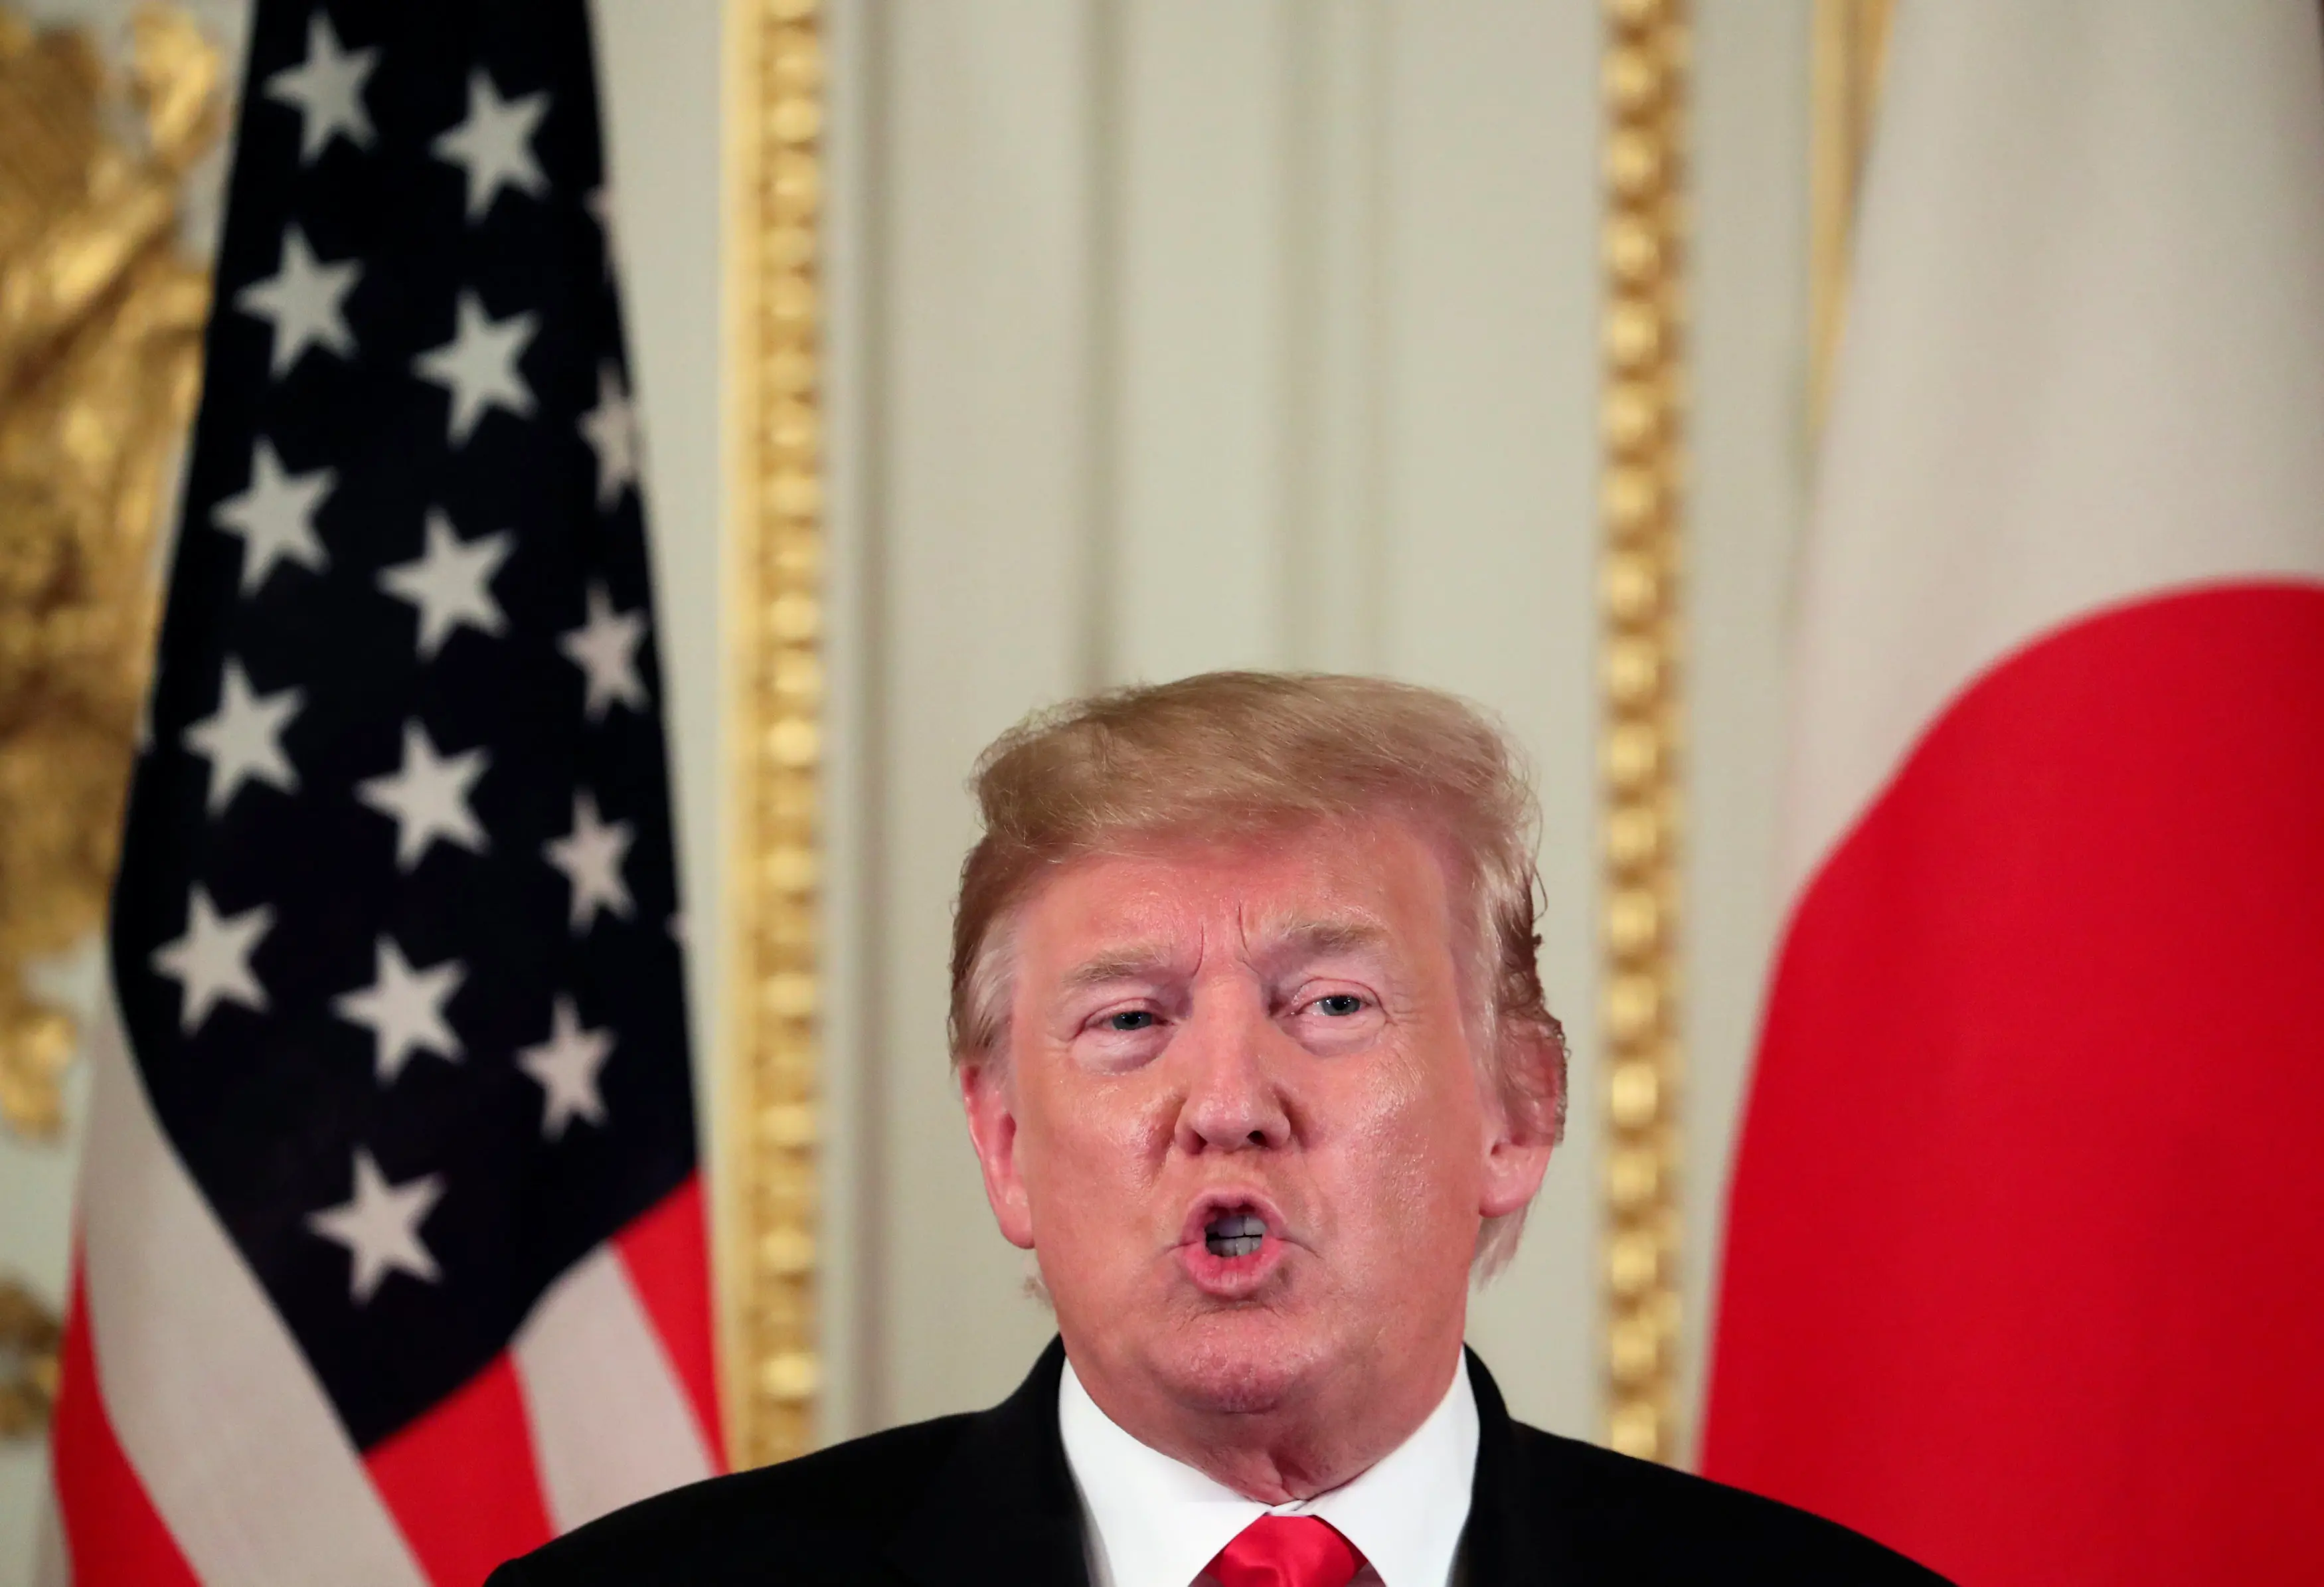 נשיא ארה"ב טראמפ במסיבת עיתונאים בטוקיו, יפן, 27 במאי 2019